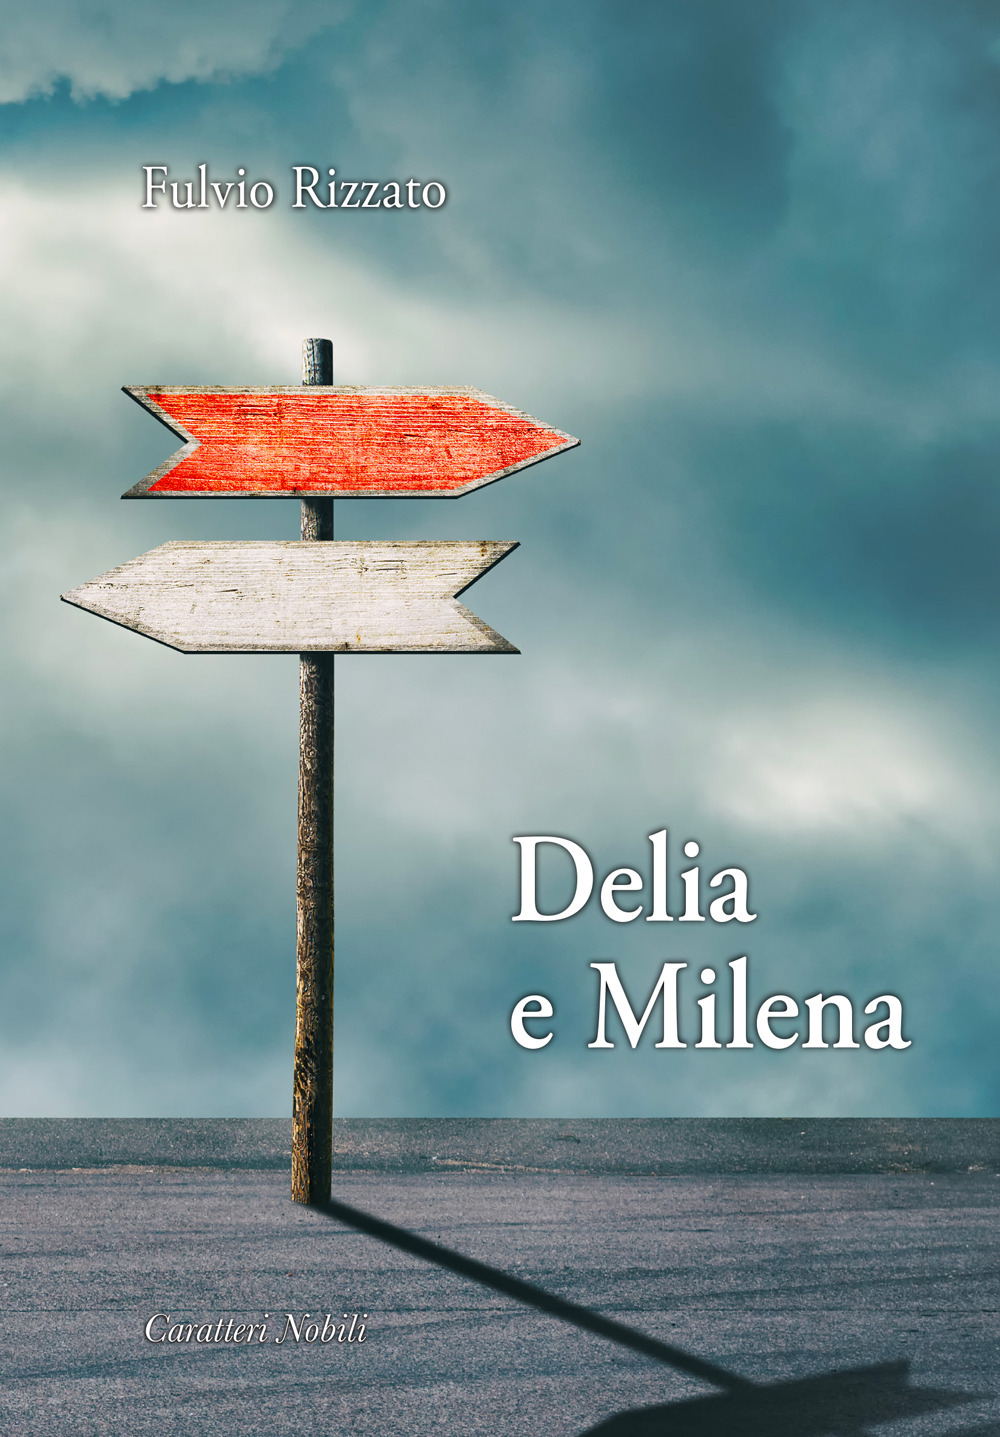 Delia e Milena